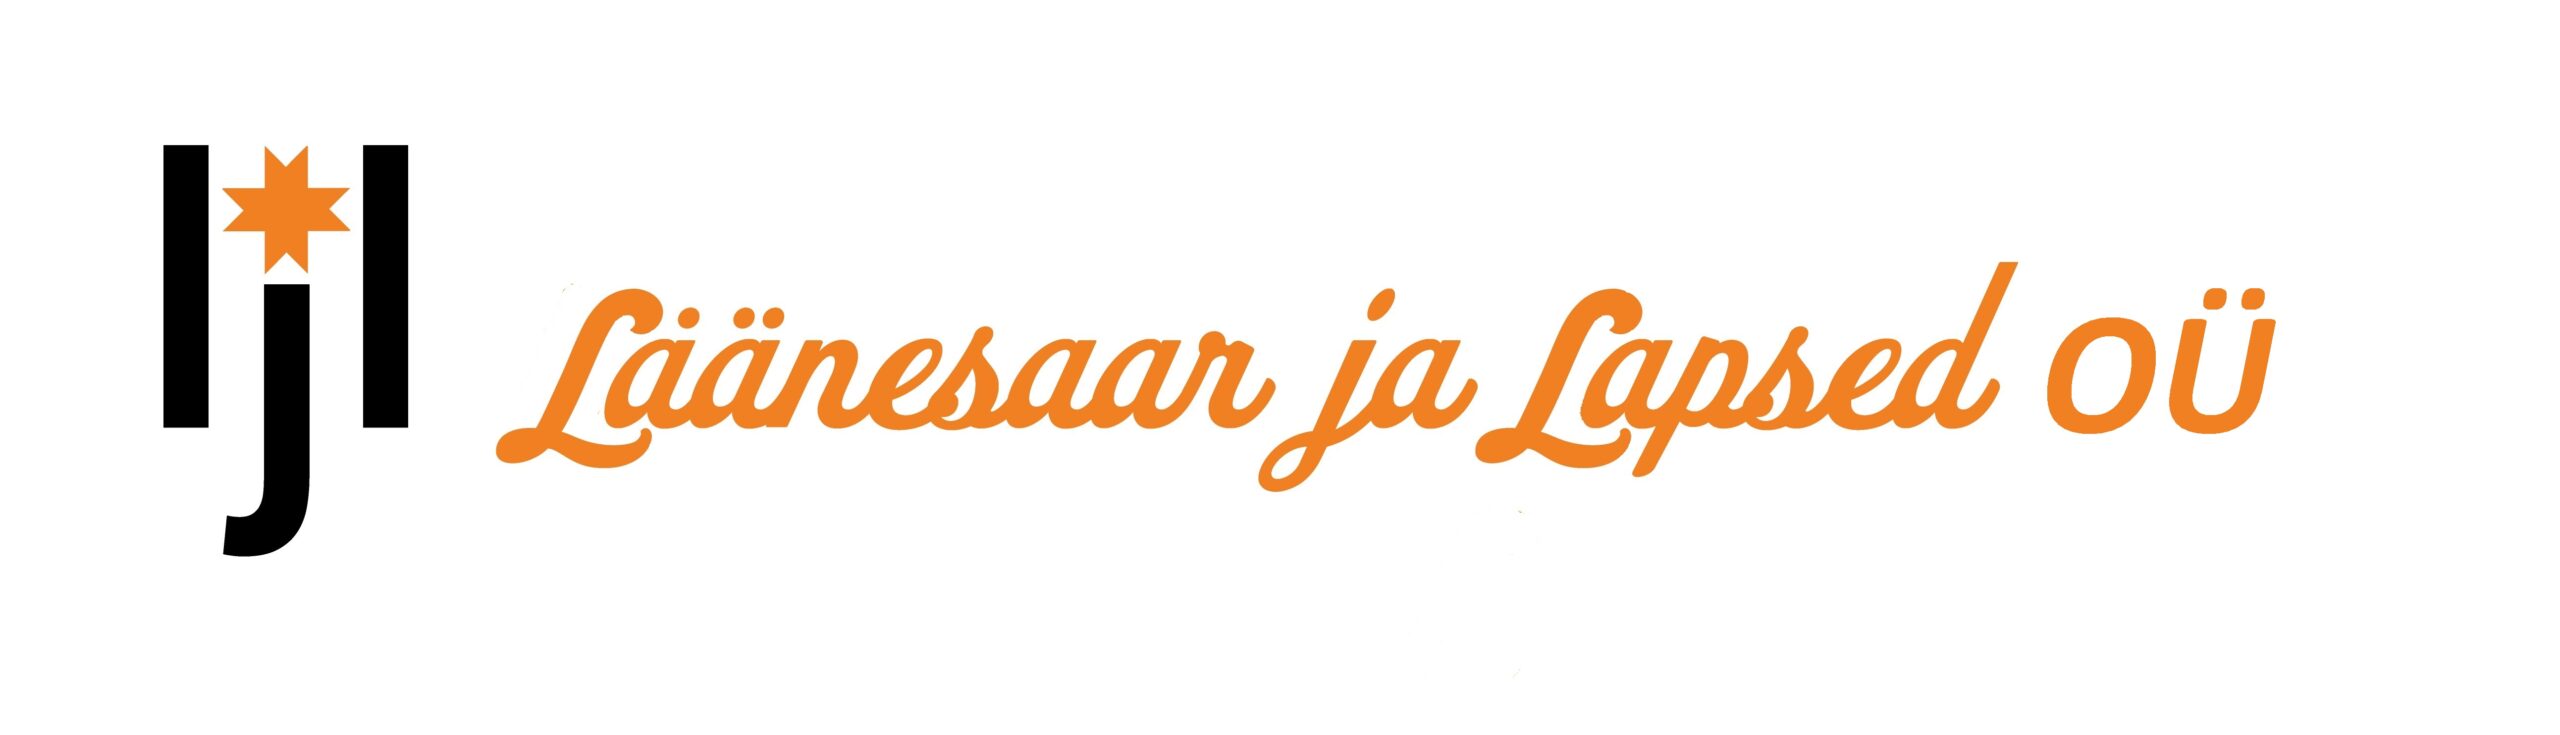 Läänesaar ja Lapsed OÜ õige logo